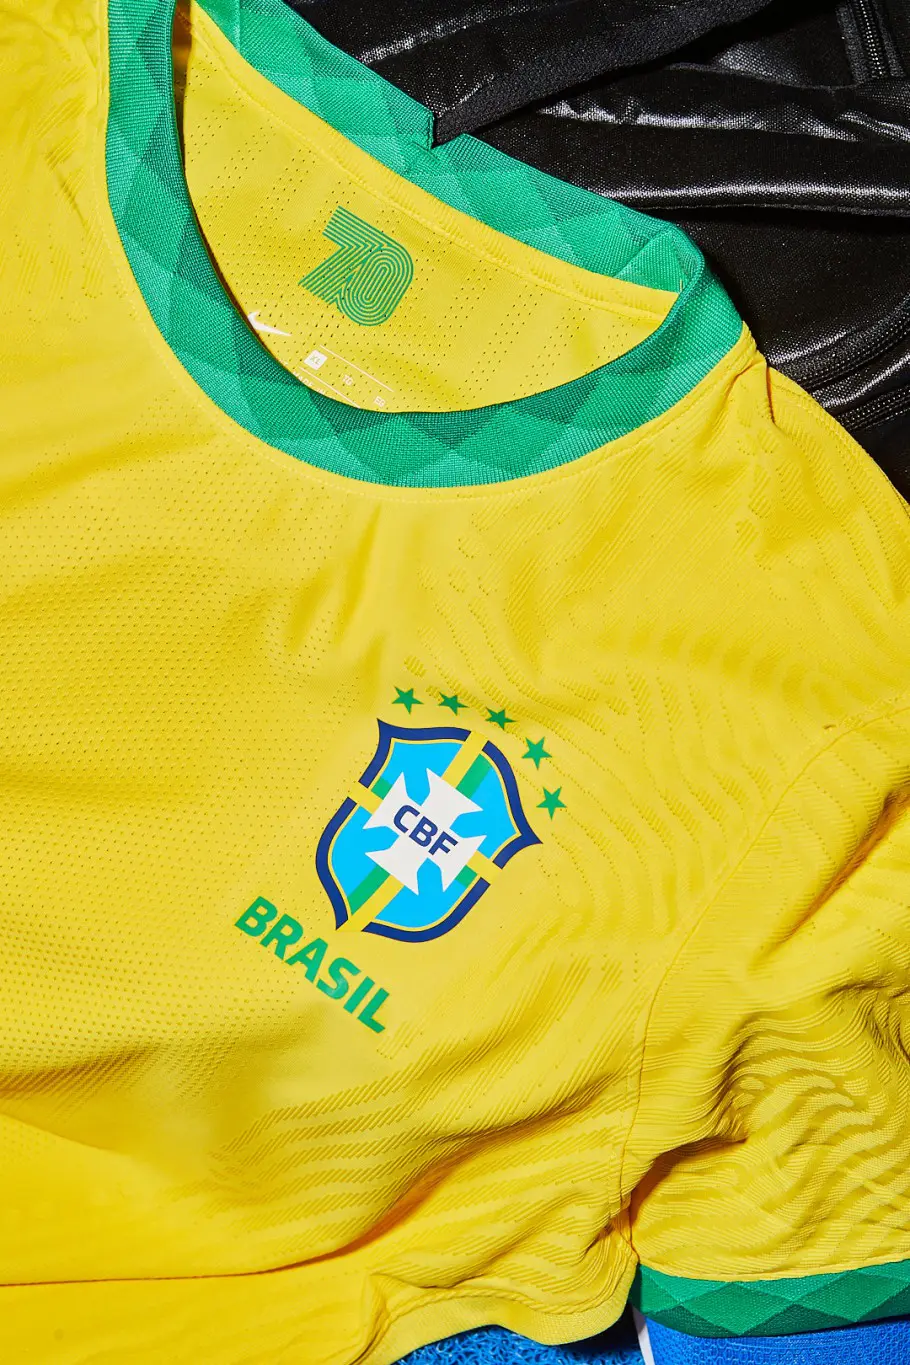 Nike e CBF apresentam os novos uniformes da Seleção Brasileira